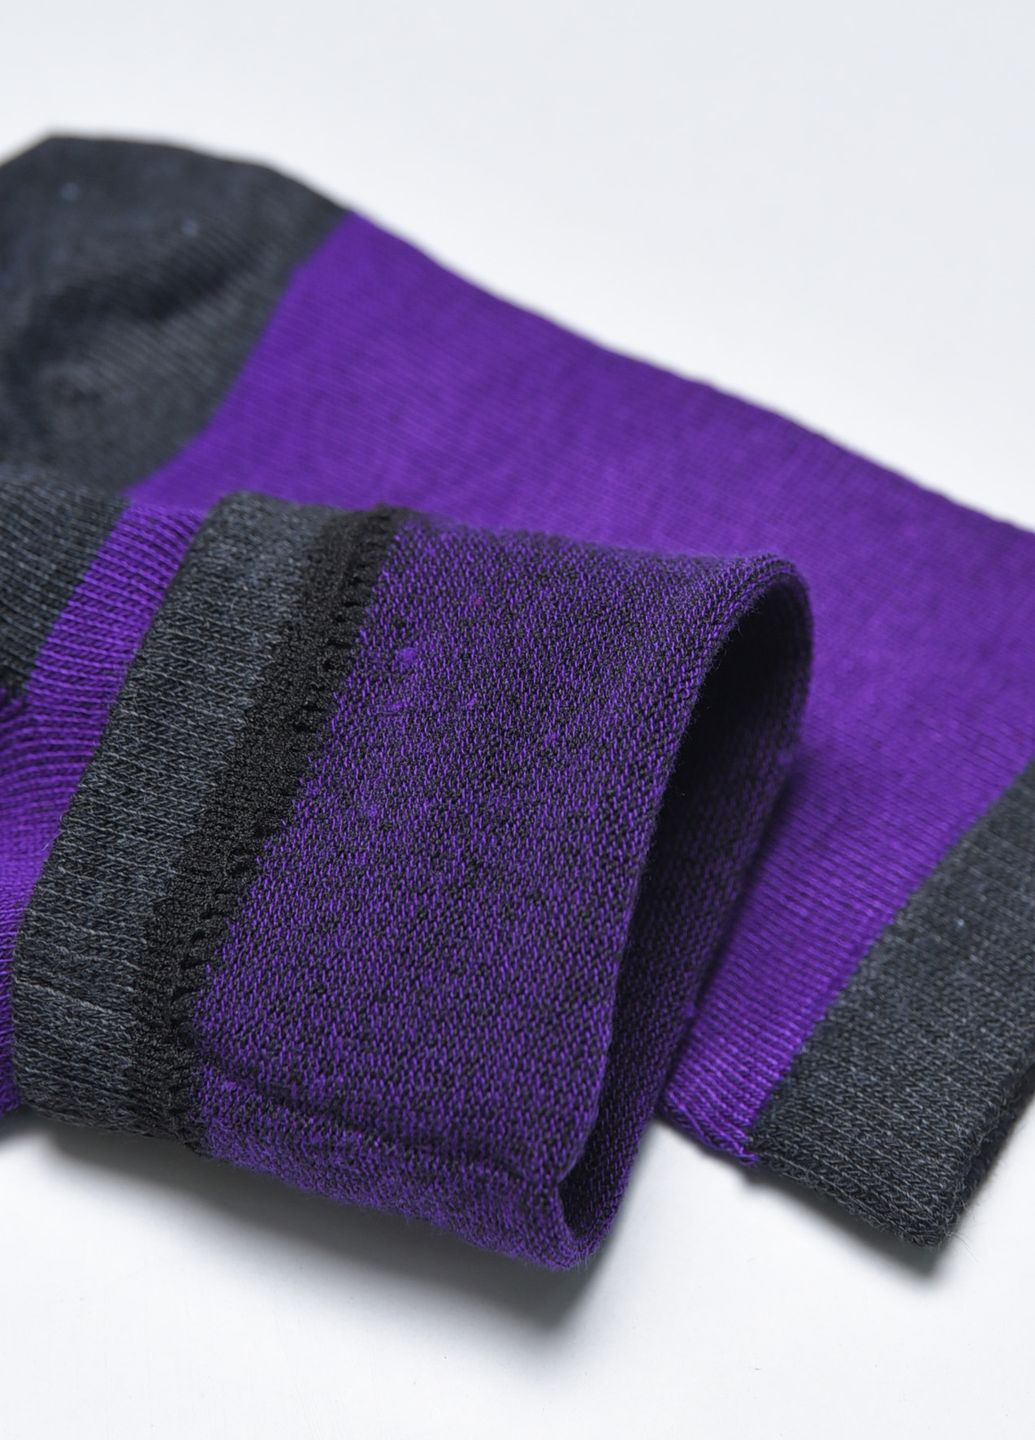 Носки подростковые для девочки фиолетового цвета Let's Shop (272976073)